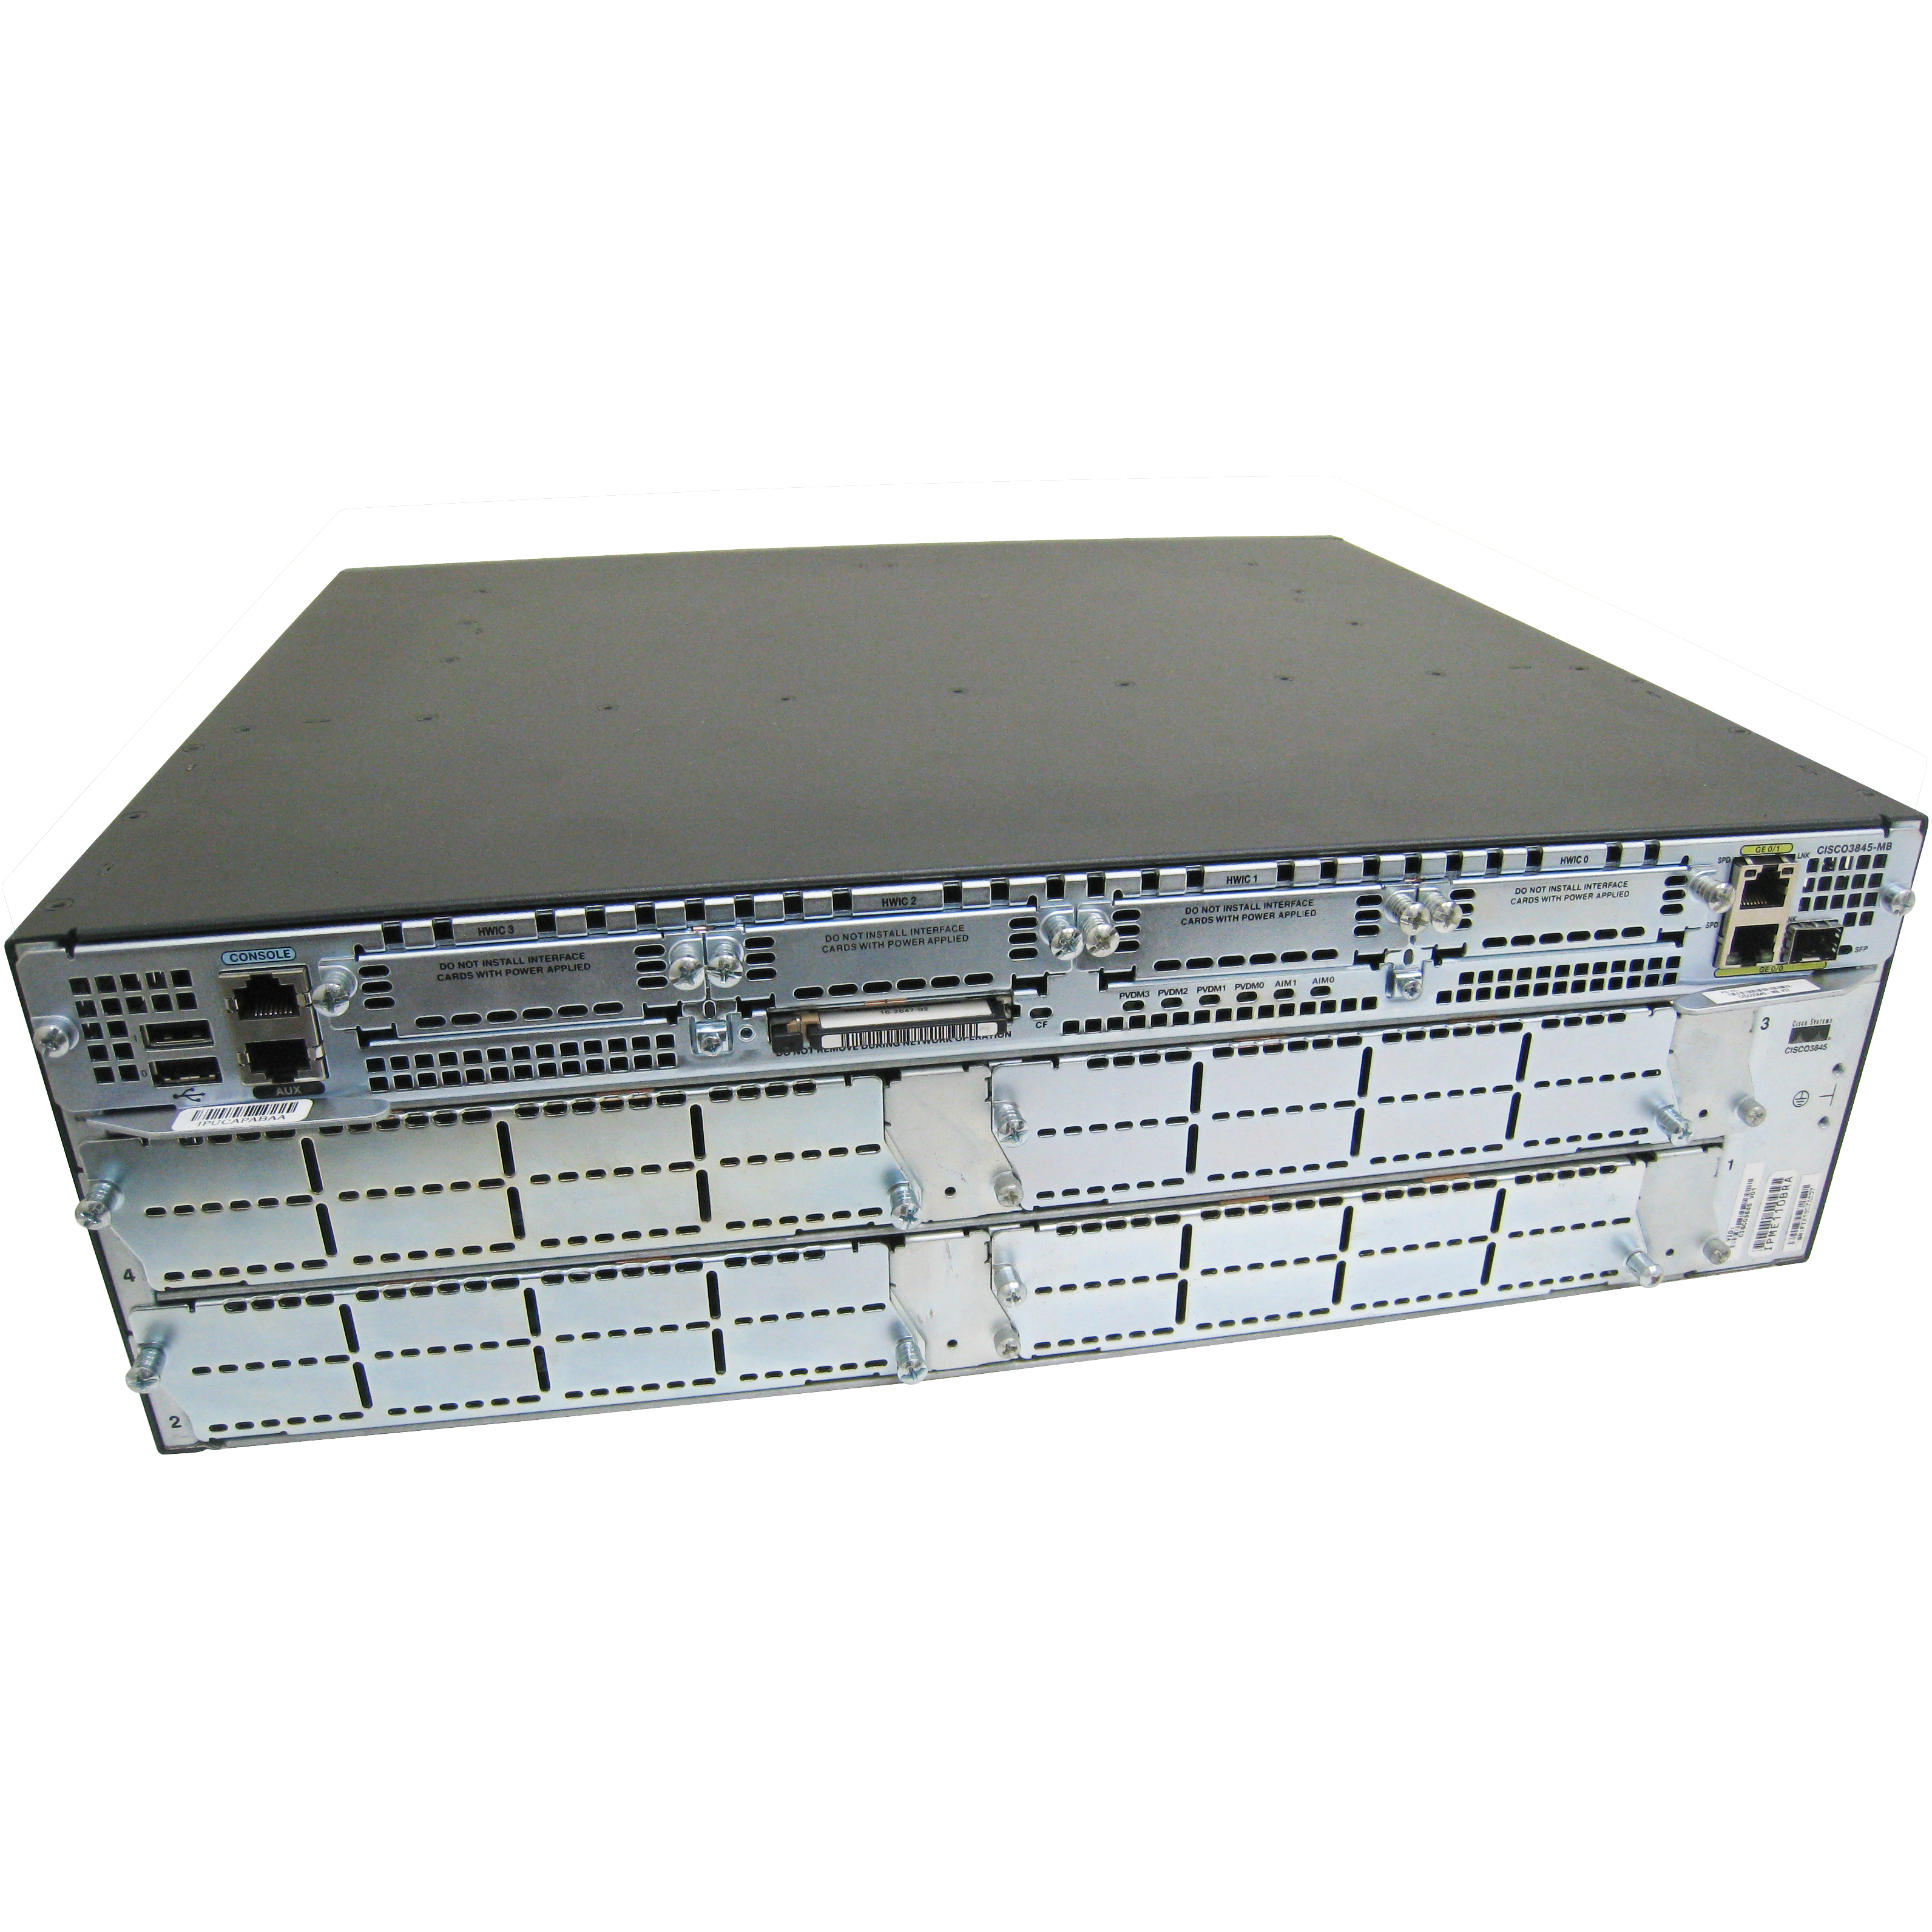 Cisco CISCO3845-SEC/K9